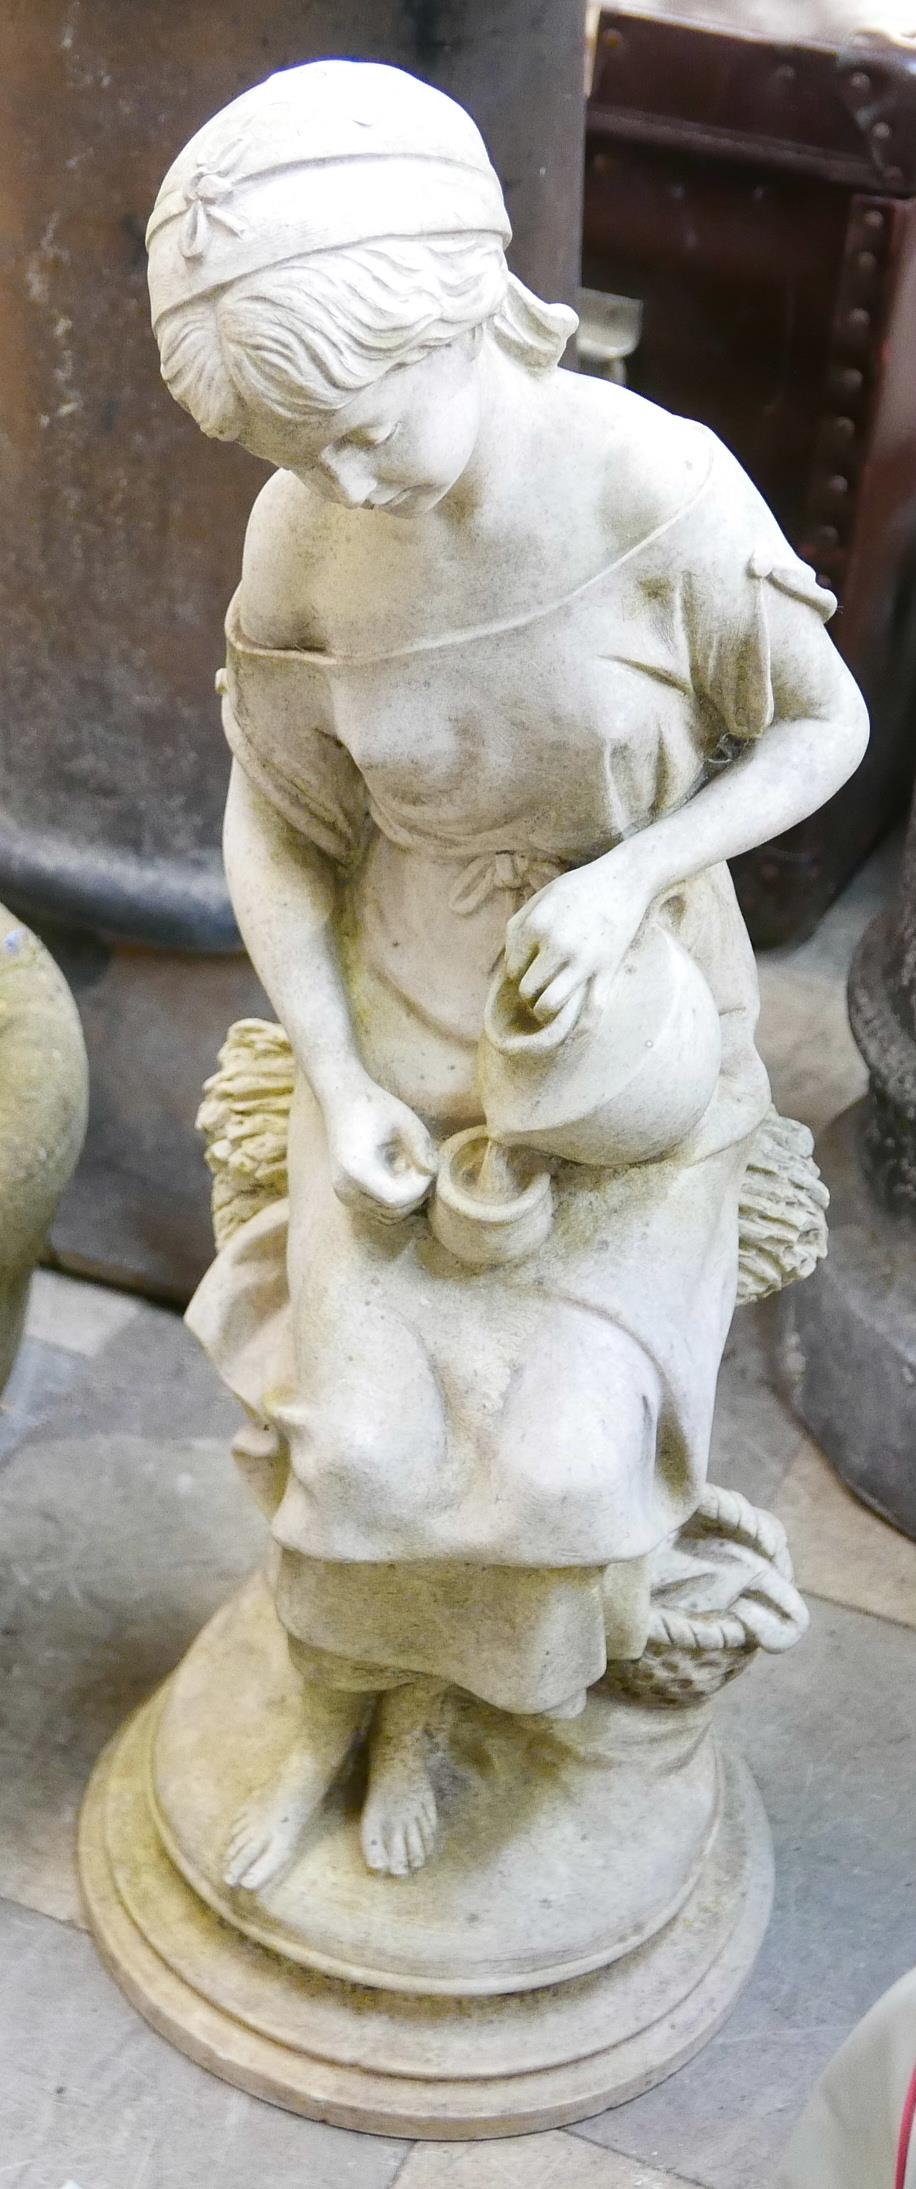 A concrete garden figure of a girl - Image 2 of 2